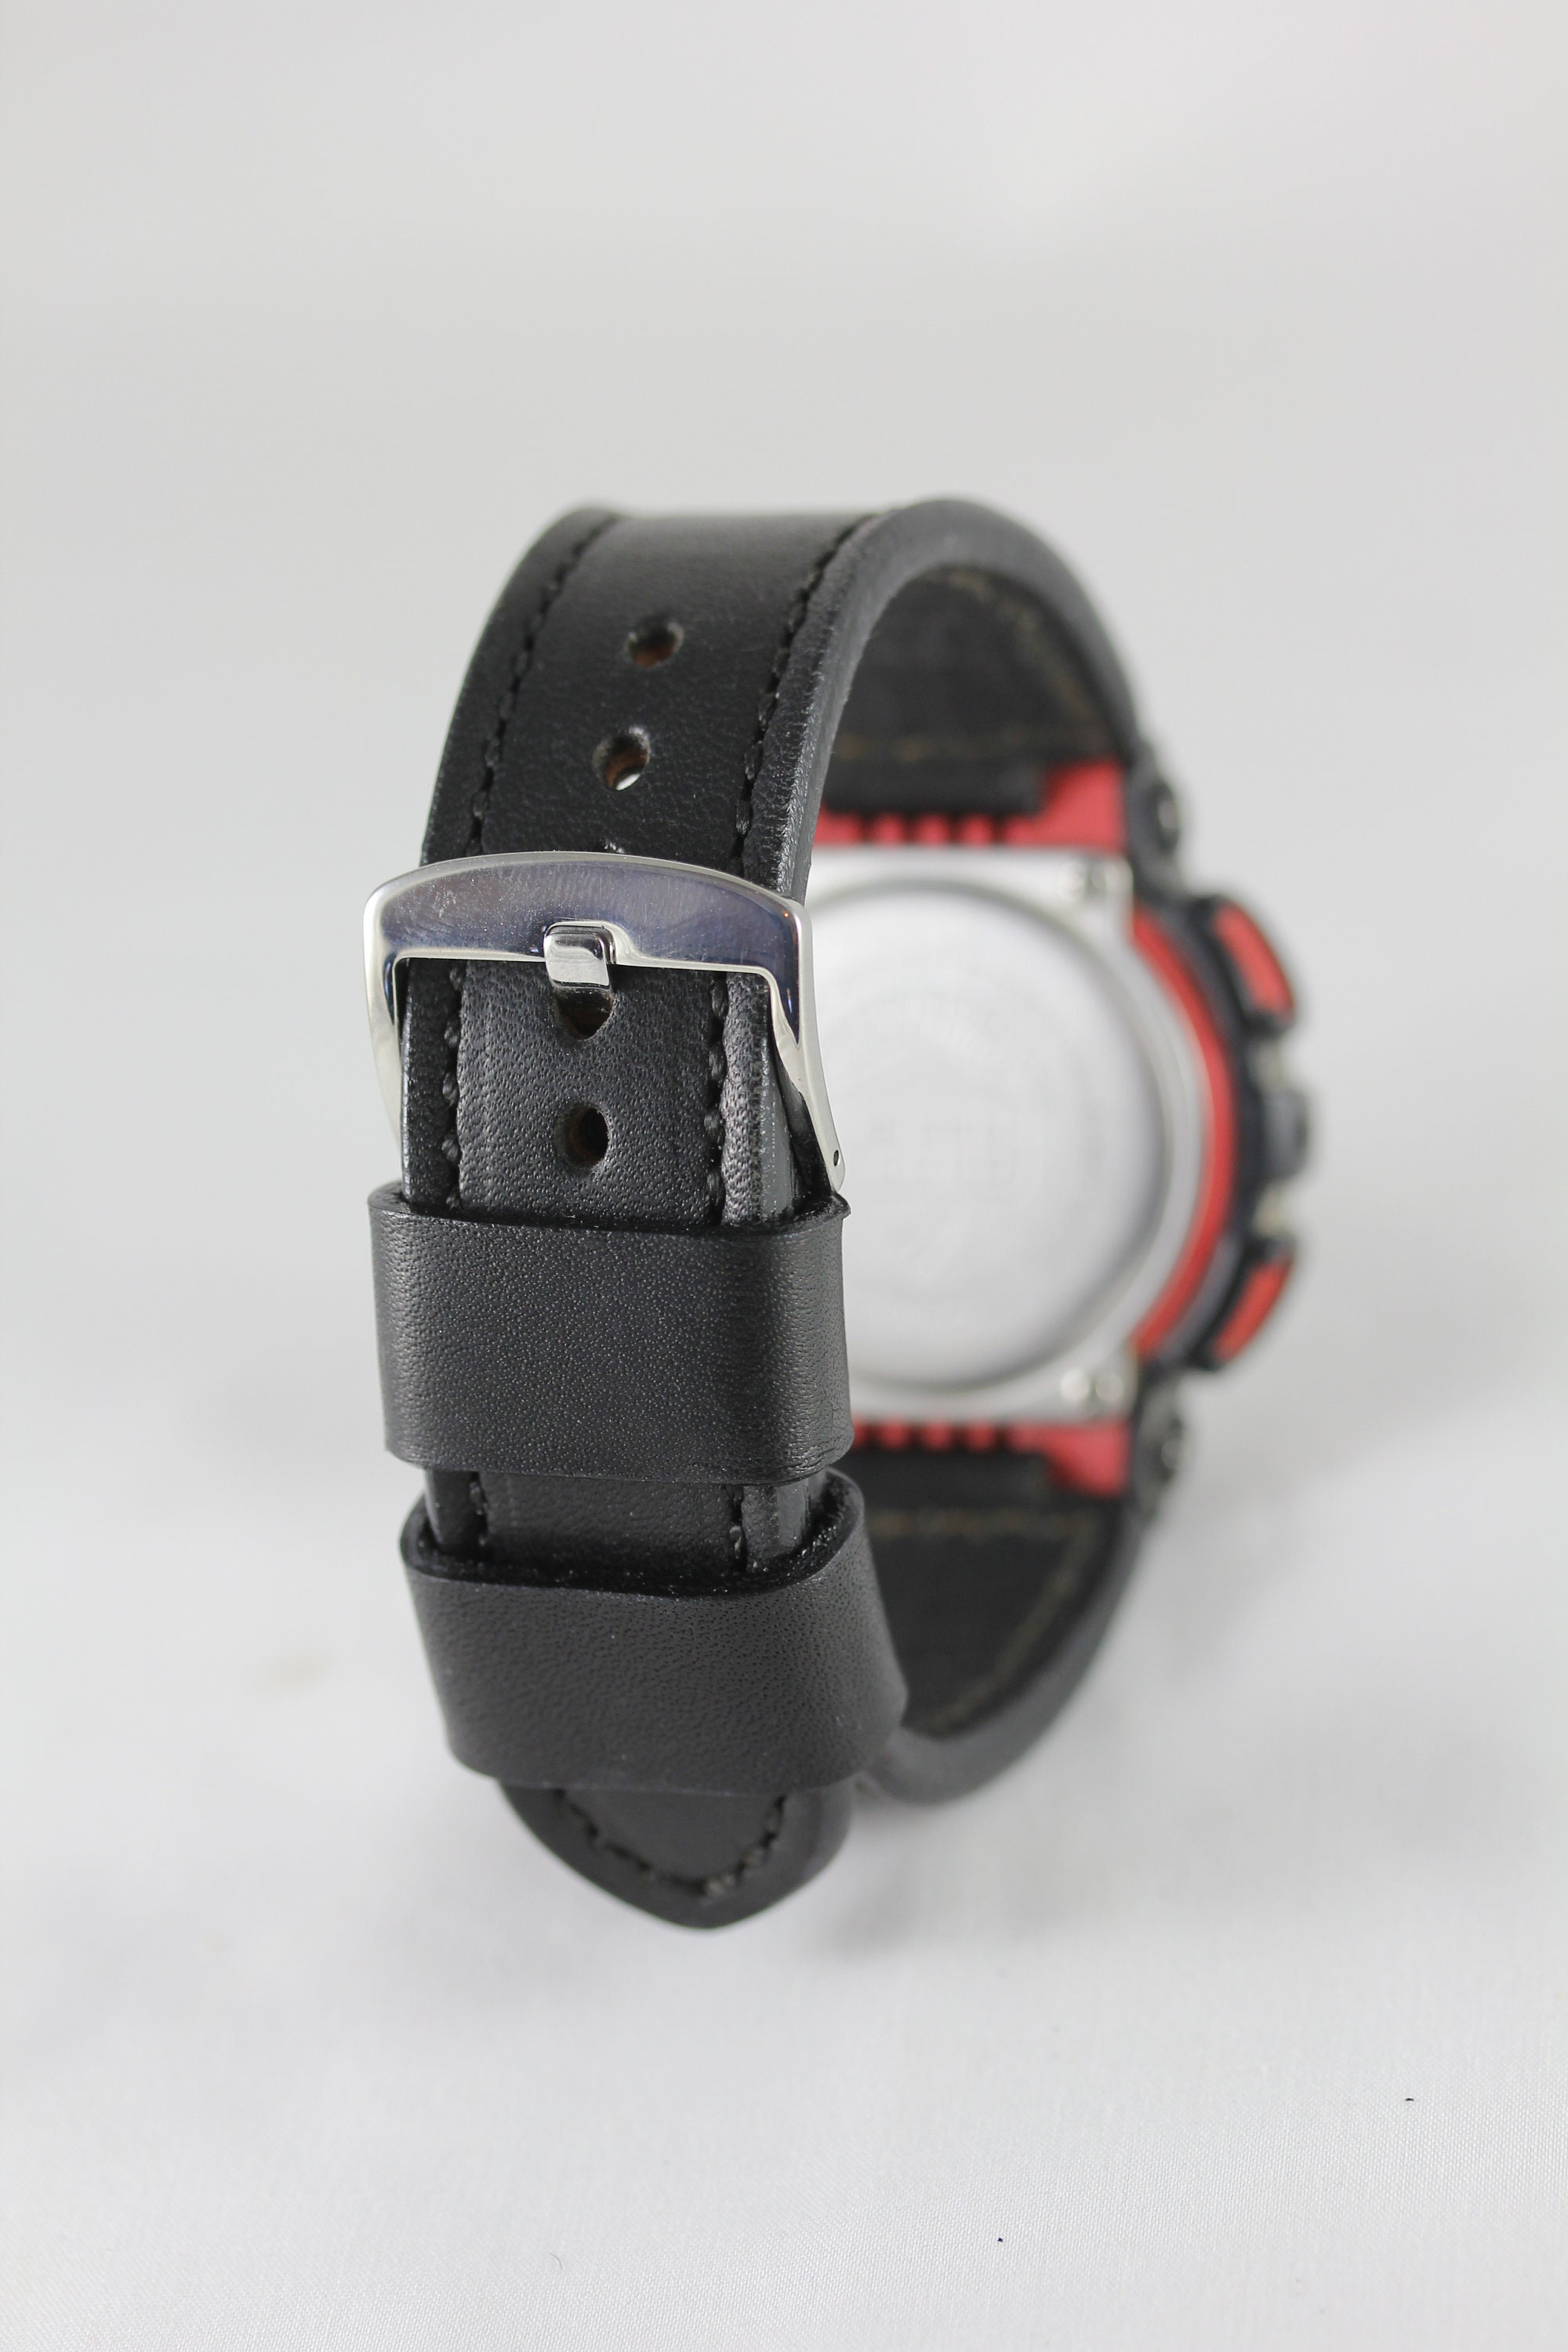 Casio G Shock Steel Bracelet  Model G701D S1001EN  Welwyn Watch Parts